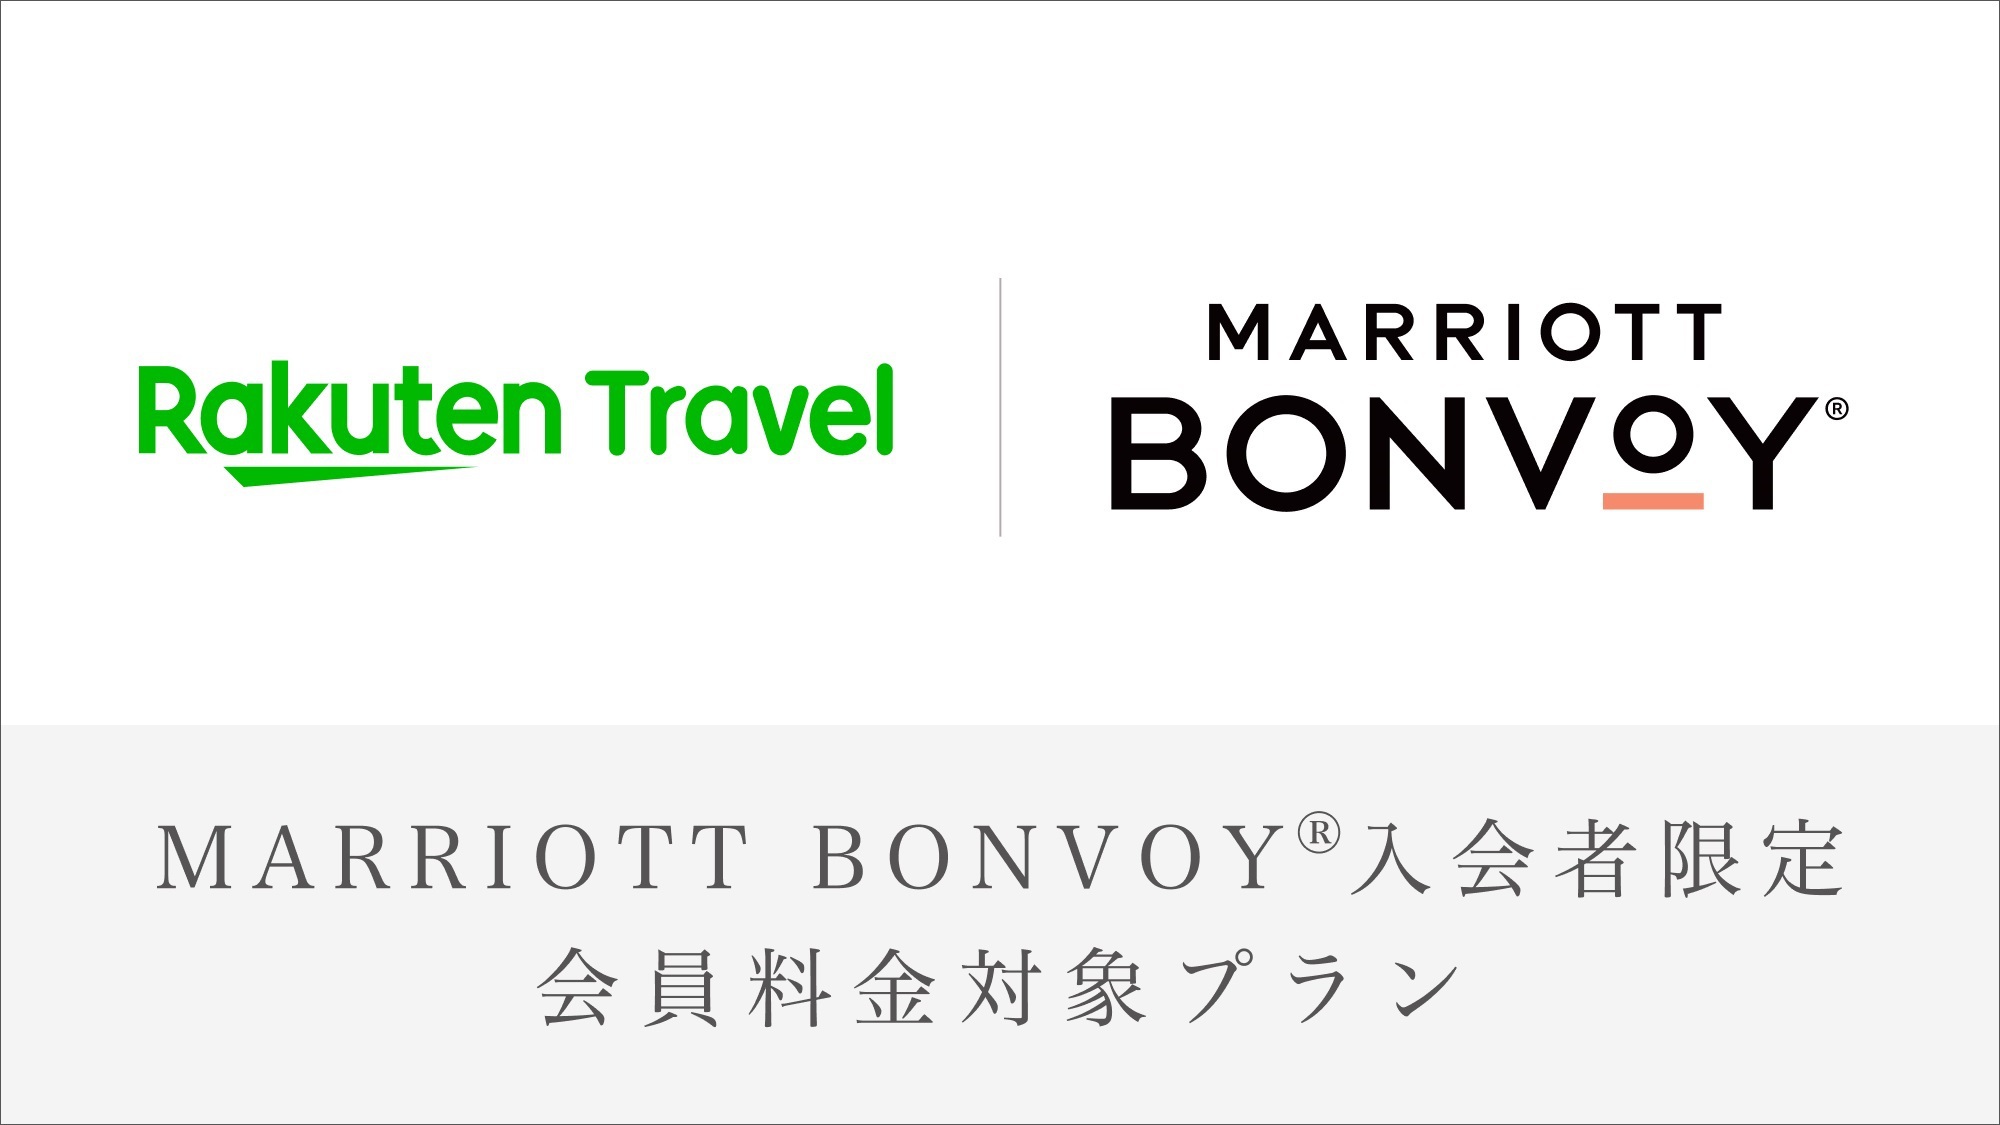 【Marriott Bonvoy会員価格対象プラン】Basic Stay